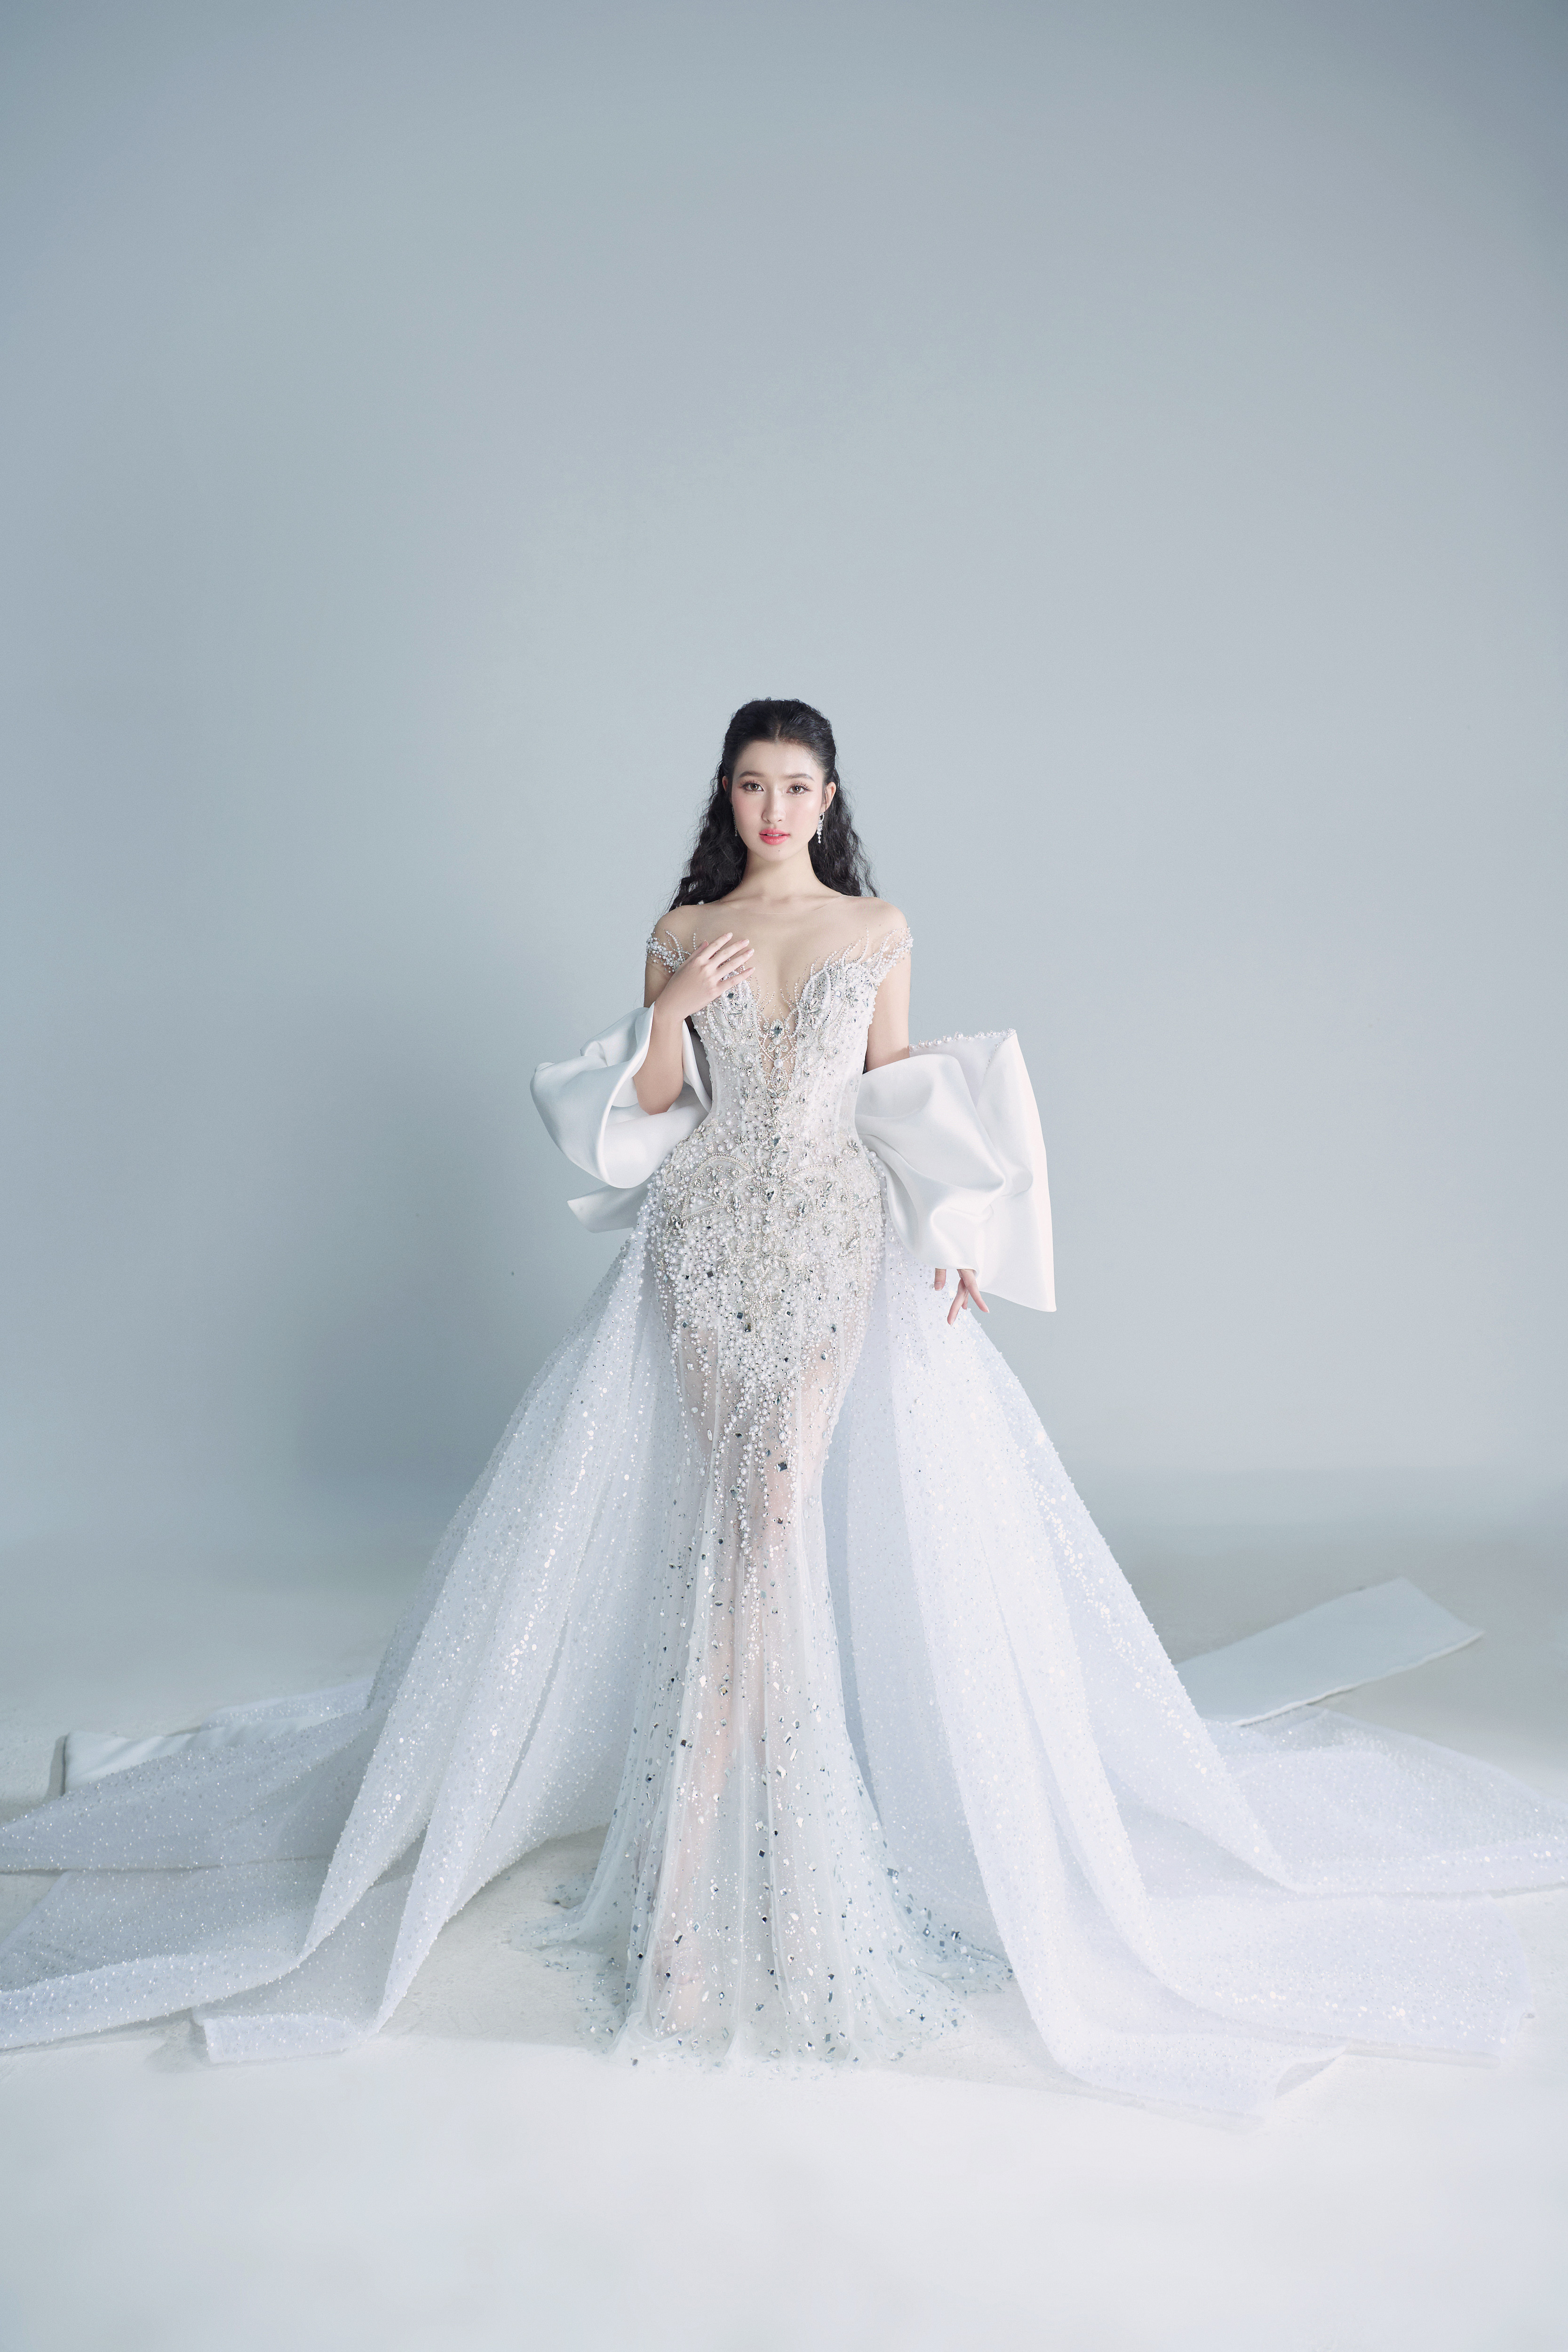 View - Phương Nhi hé lộ 2 thiết kế dạ hội cho đêm chung kết Miss International 2023